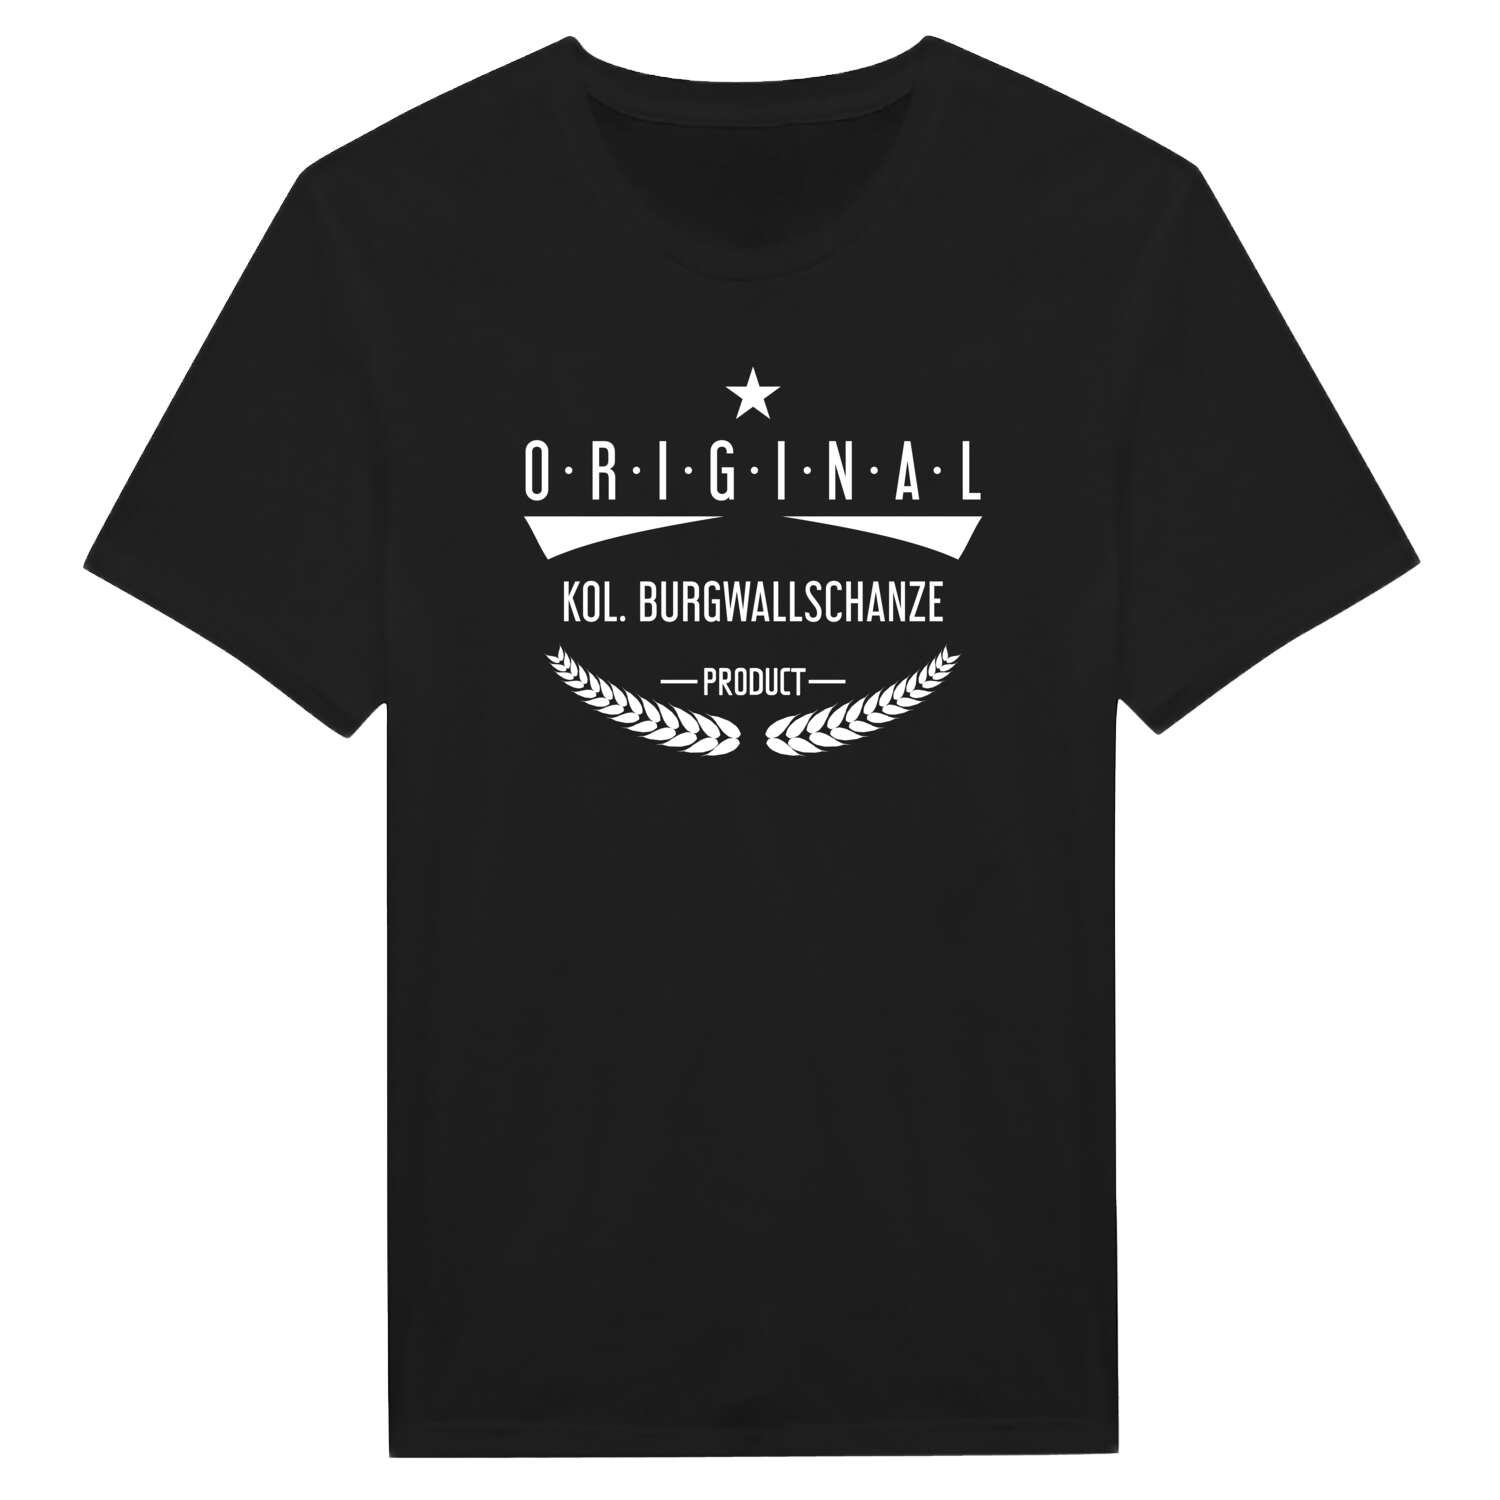 Kol. Burgwallschanze T-Shirt »Original Product«